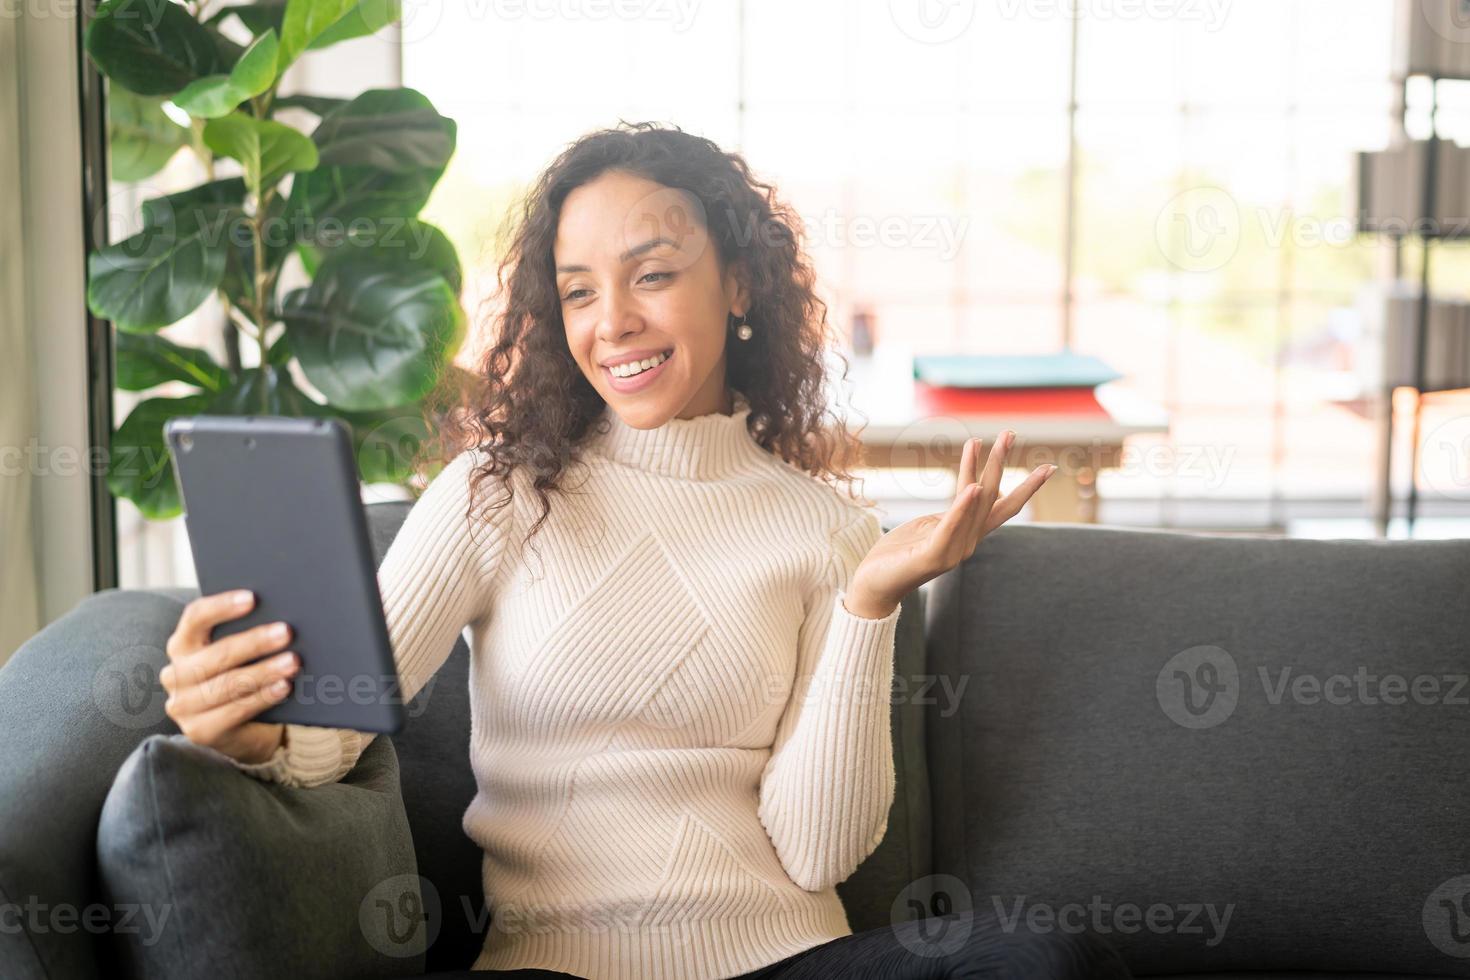 videoconferenza donna latina su tablet con sensazione felice foto